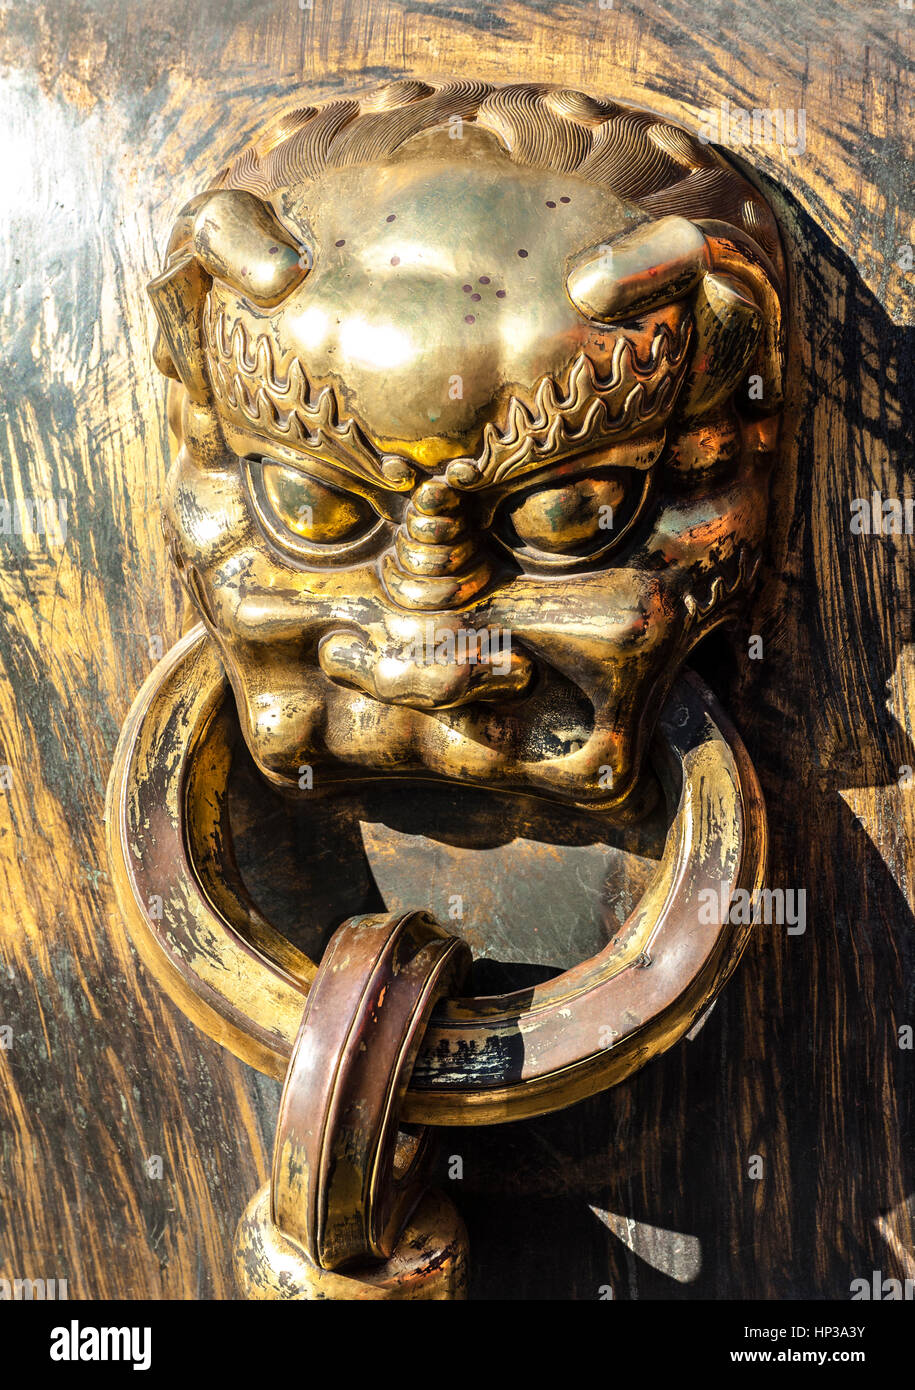 Bronze handle of the water vat in Forbidden City Stock Photo